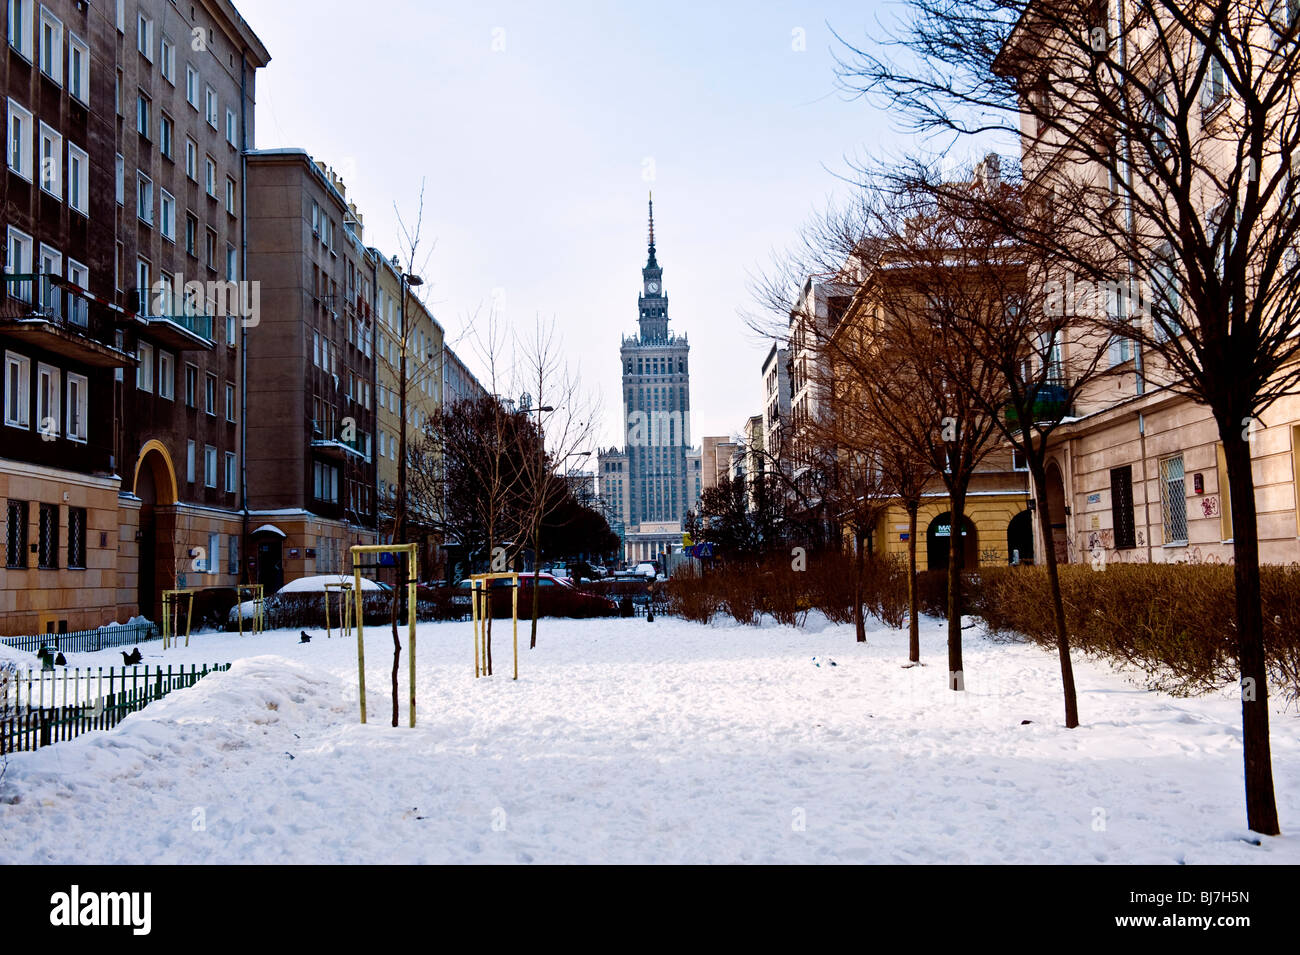 Escena de una calle de invierno en Varsovia Polonia con soviética construyó el Palacio de la cultura y la ciencia en el fondo Foto de stock